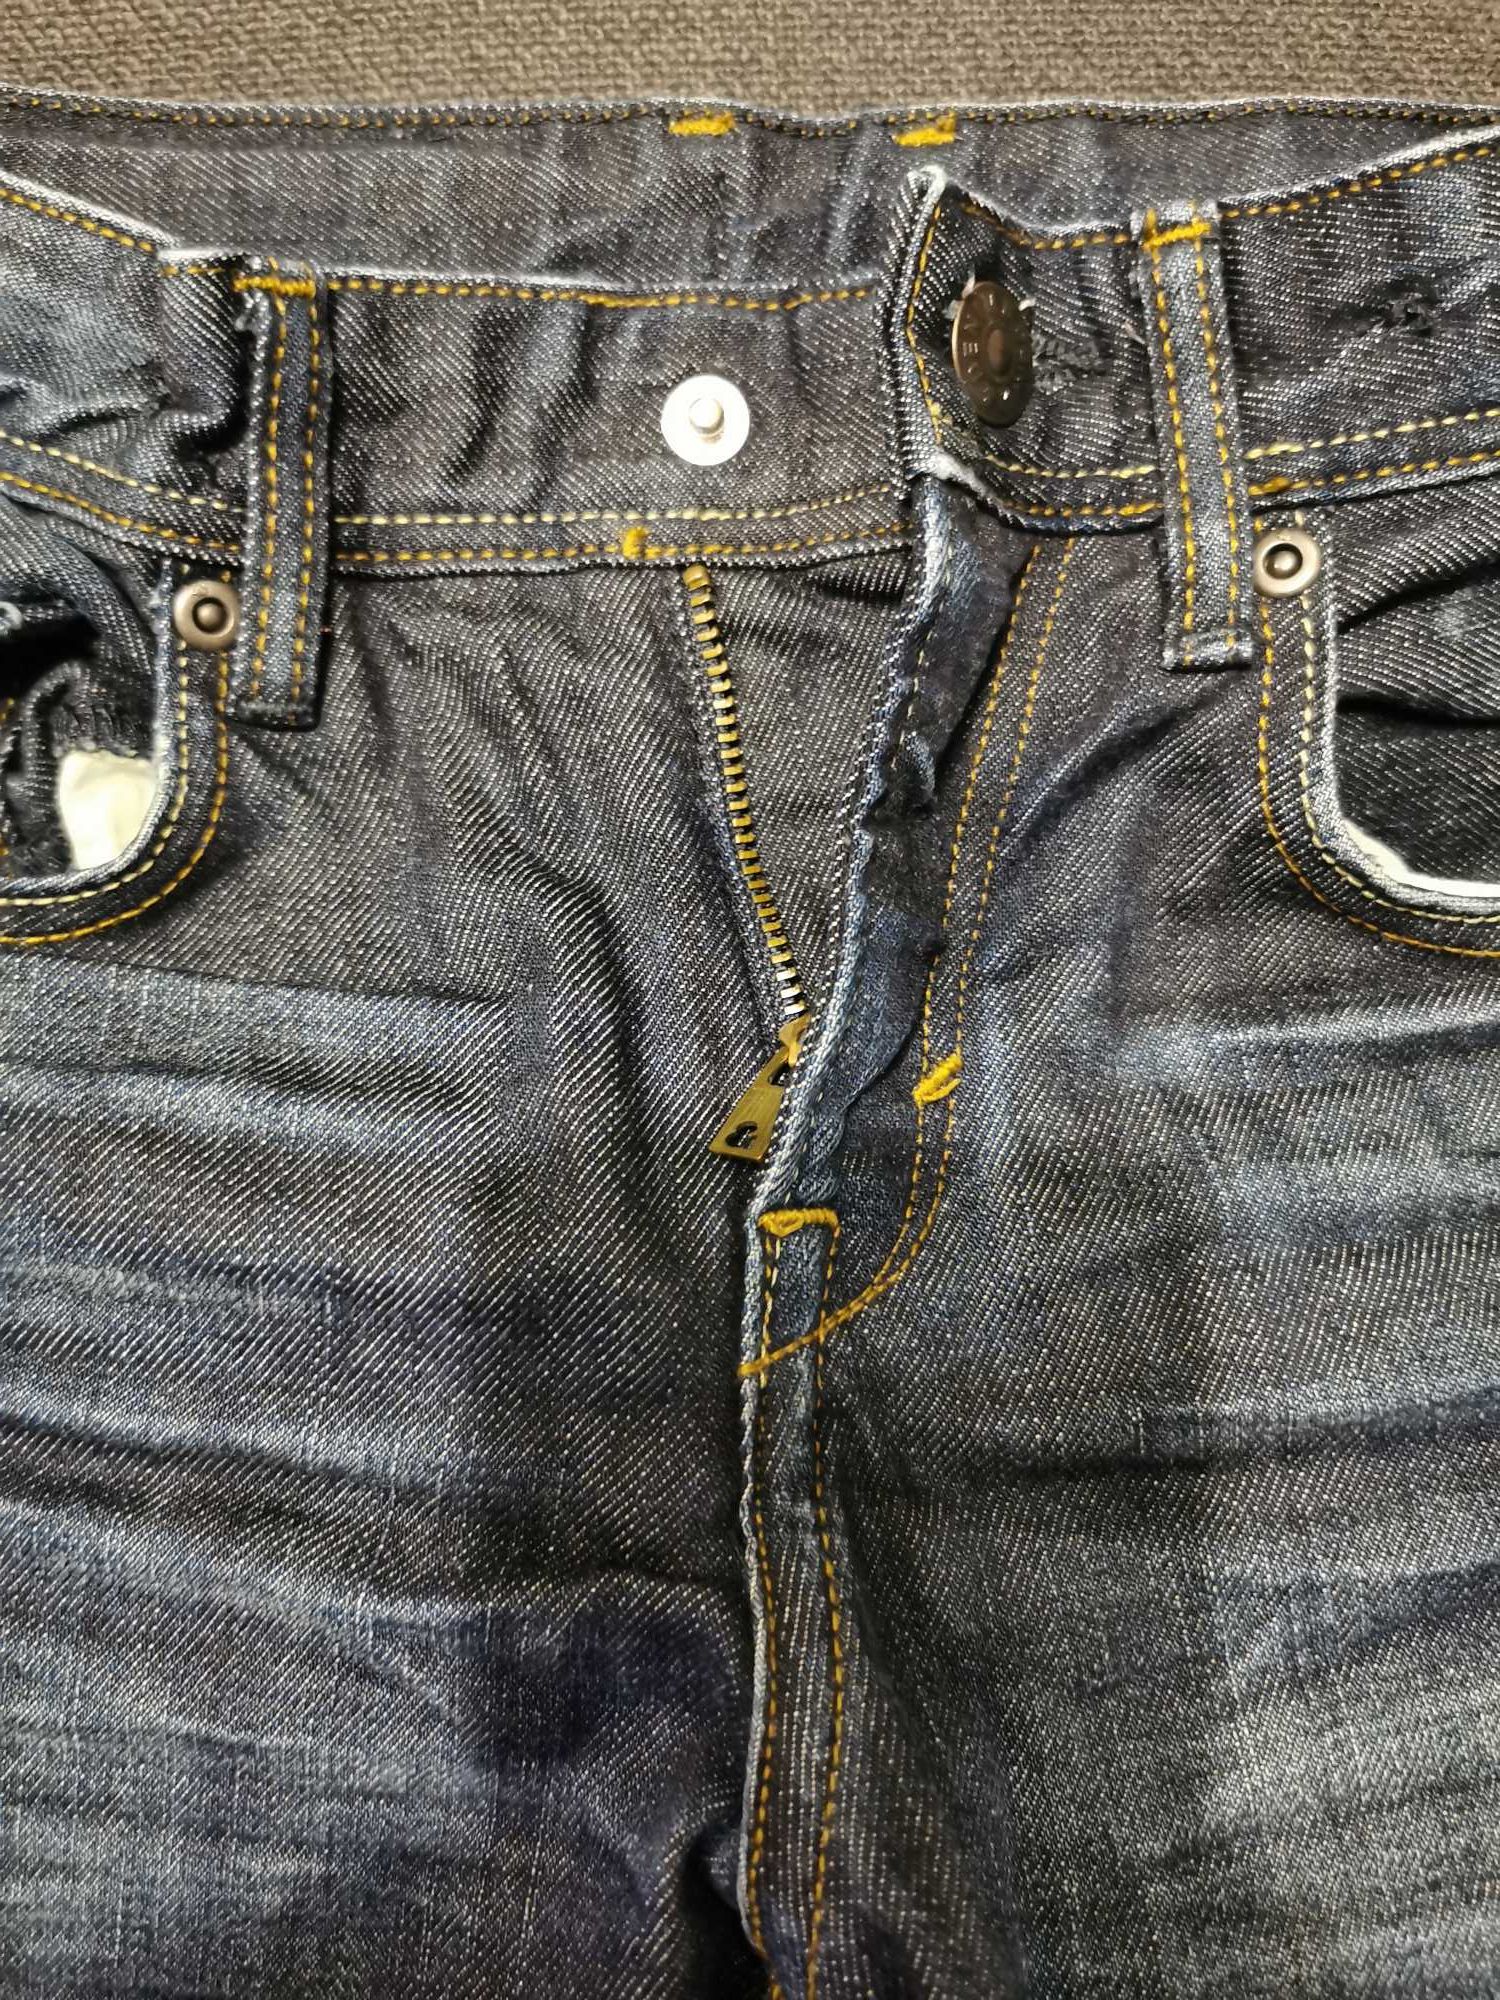 Spodnie chłopięce jeansowe rozmiar 116, H&M